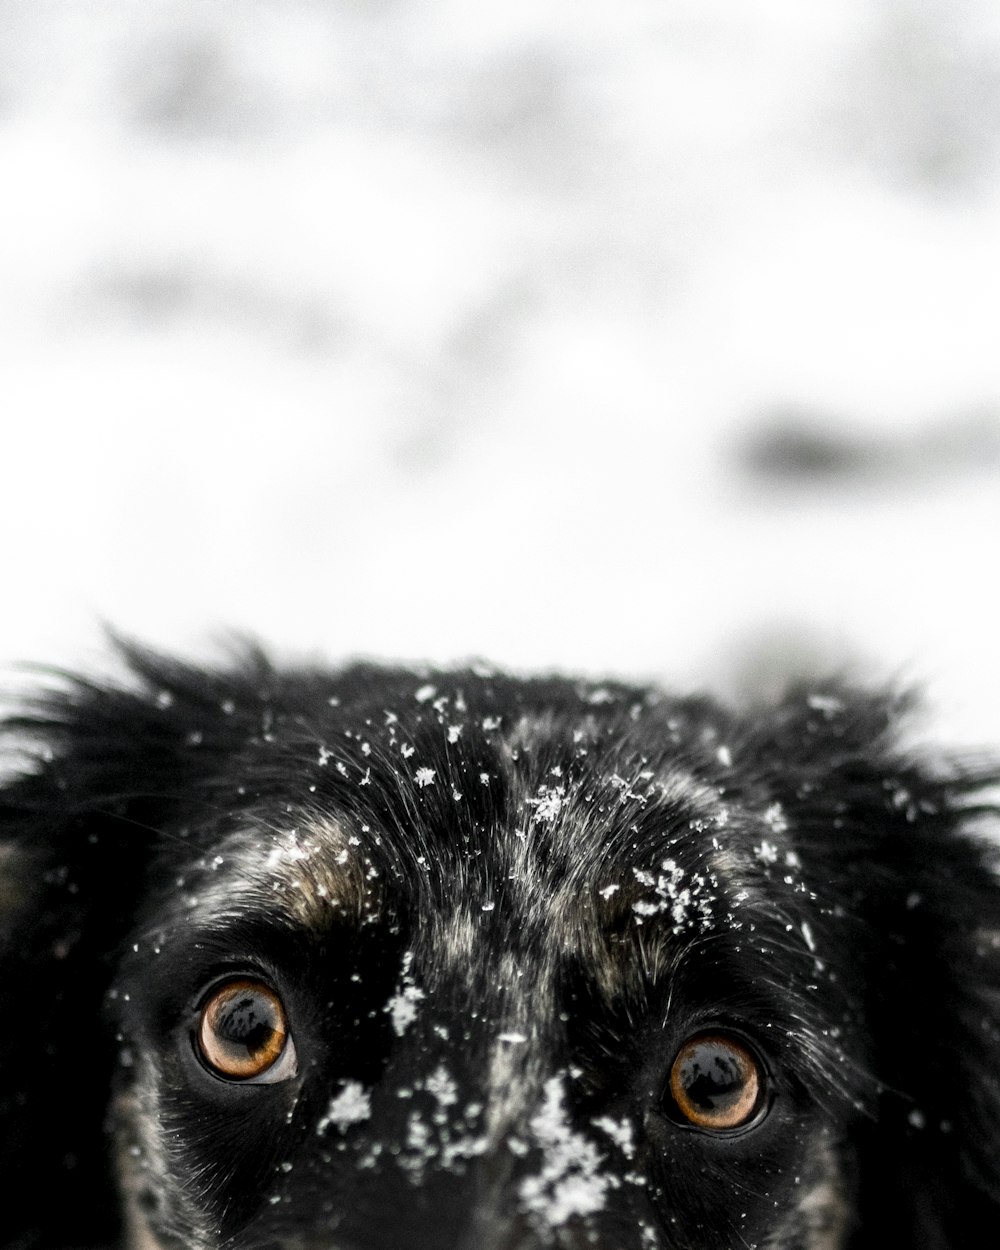 Fotografia ravvicinata di cani neri a pelo corto